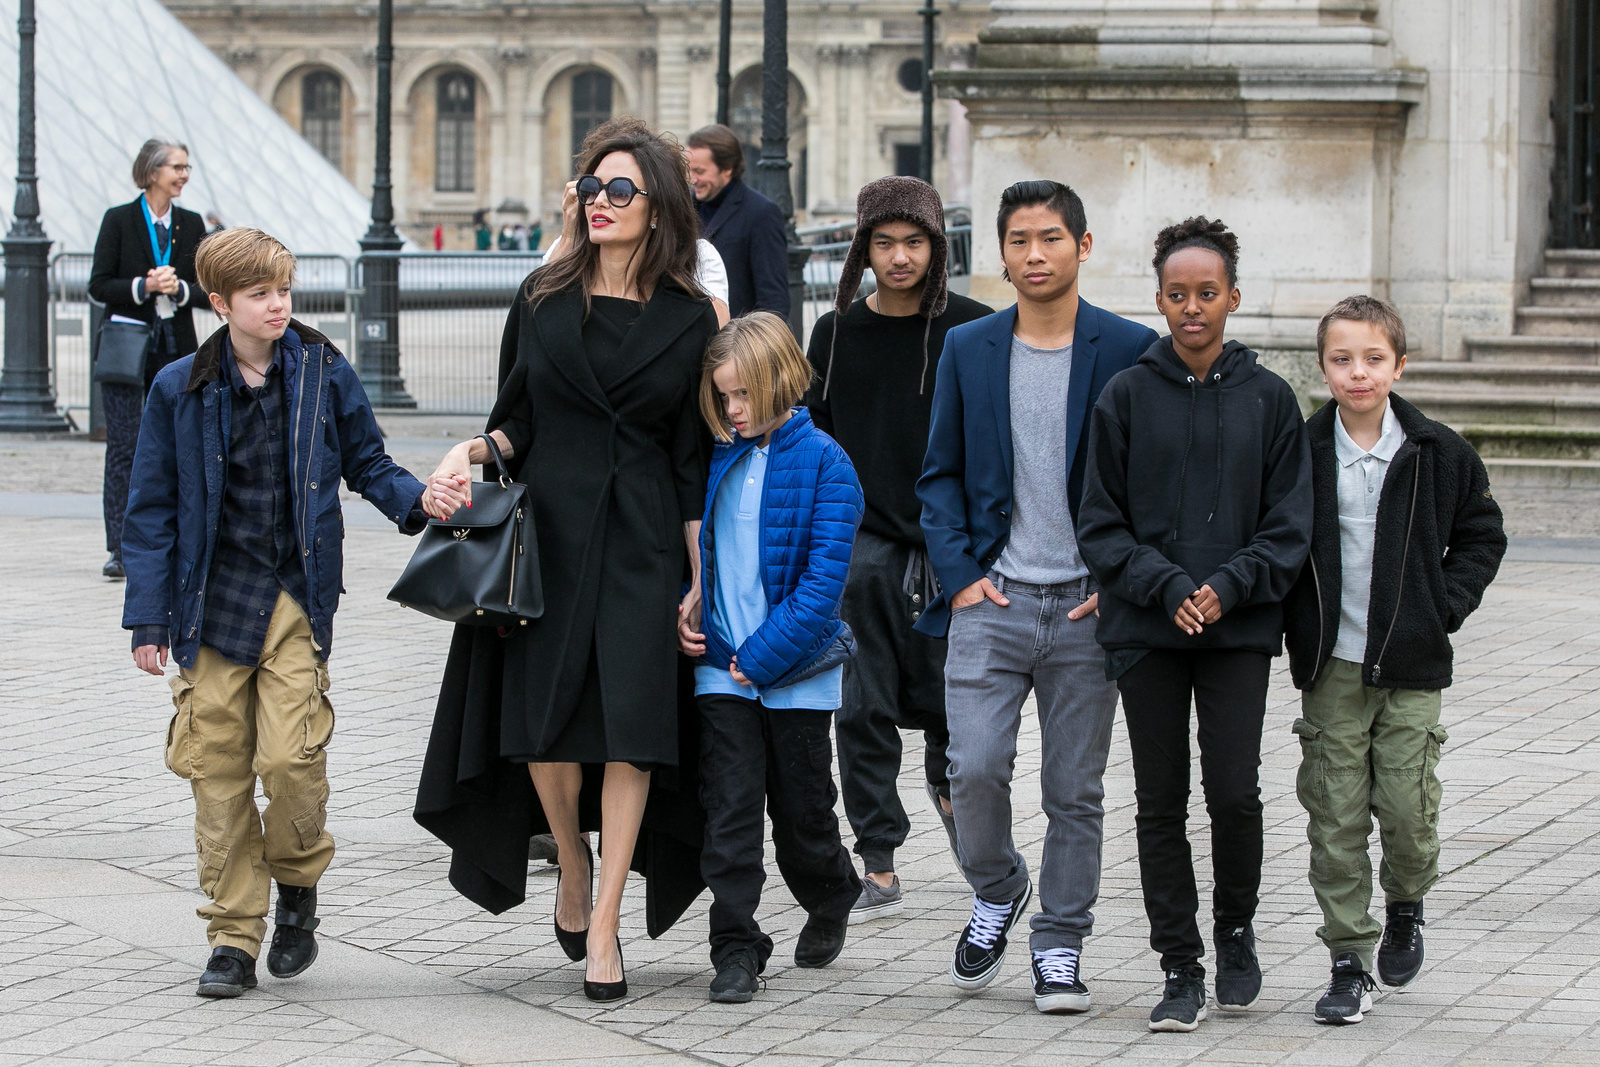 Анджелина Джоли и Бред Питт завершили развод и договорились об опеке над детьми